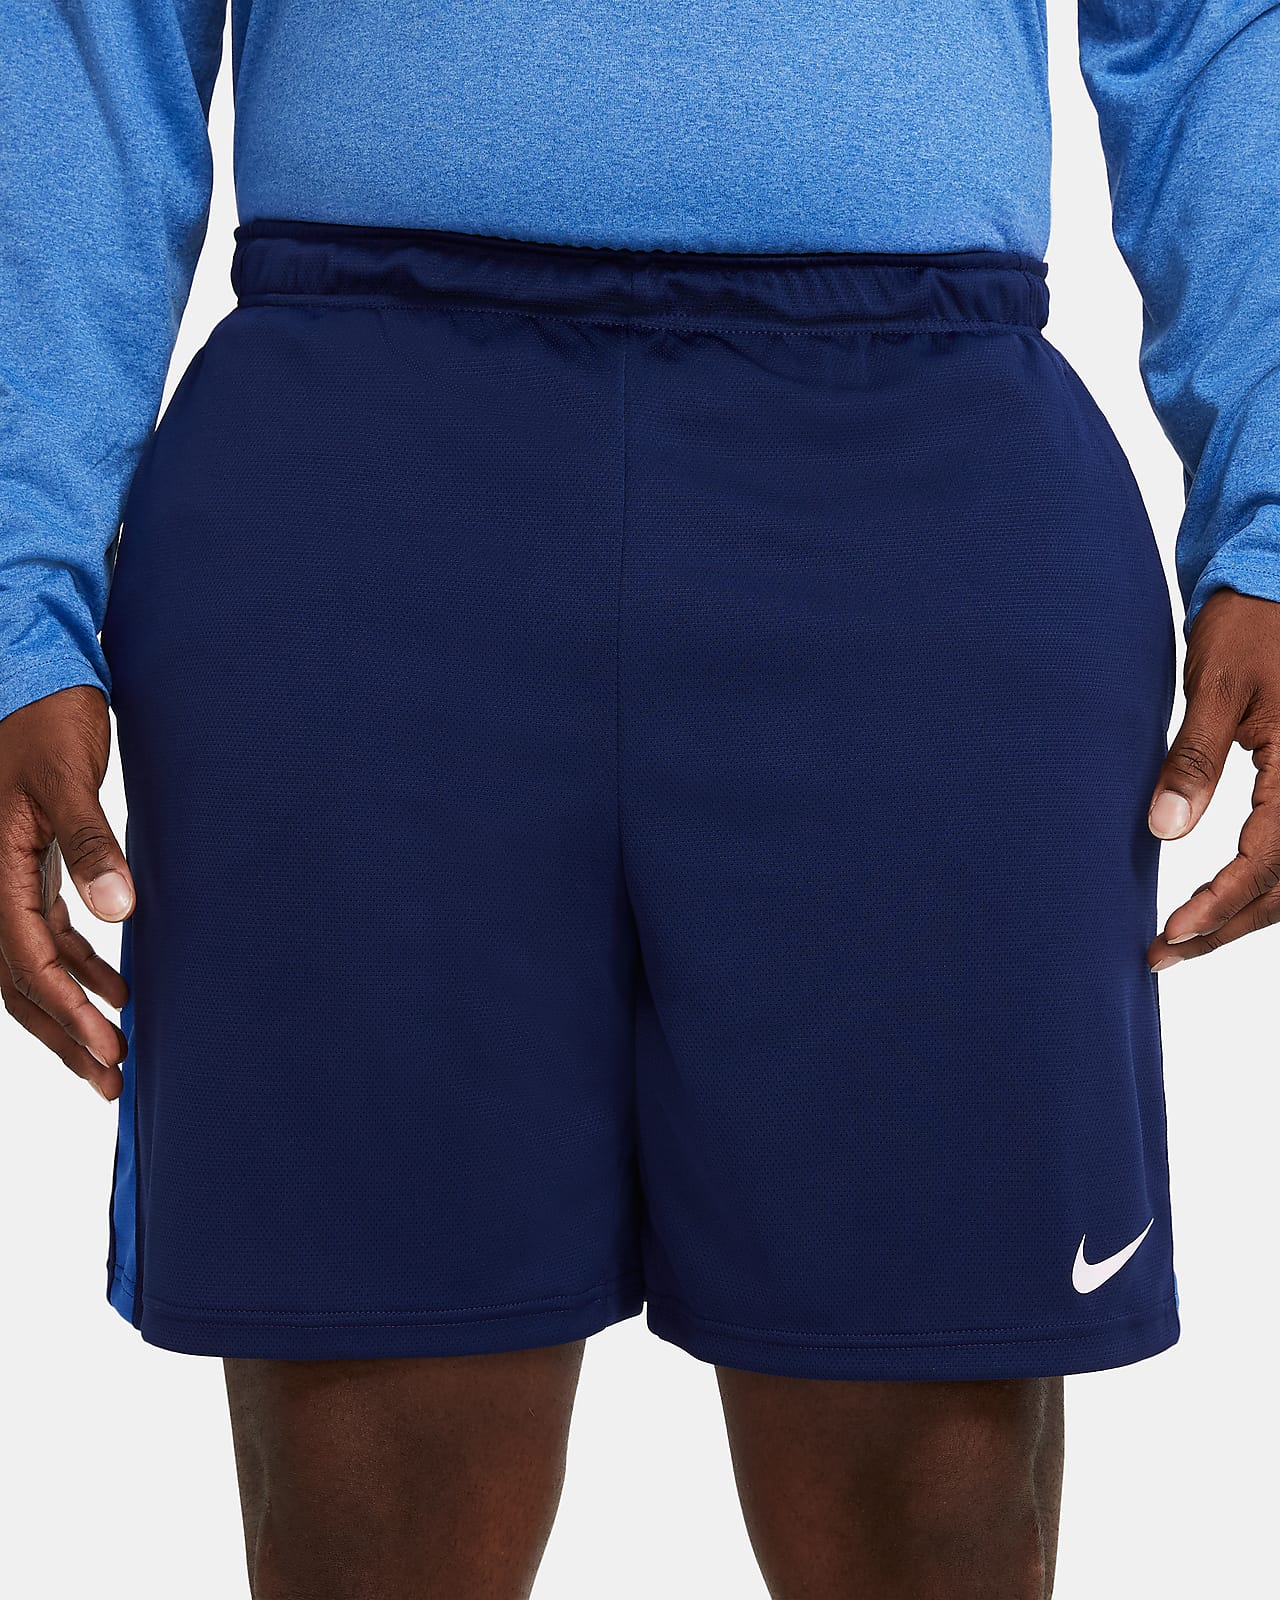 nike men's dri fit shorts sale